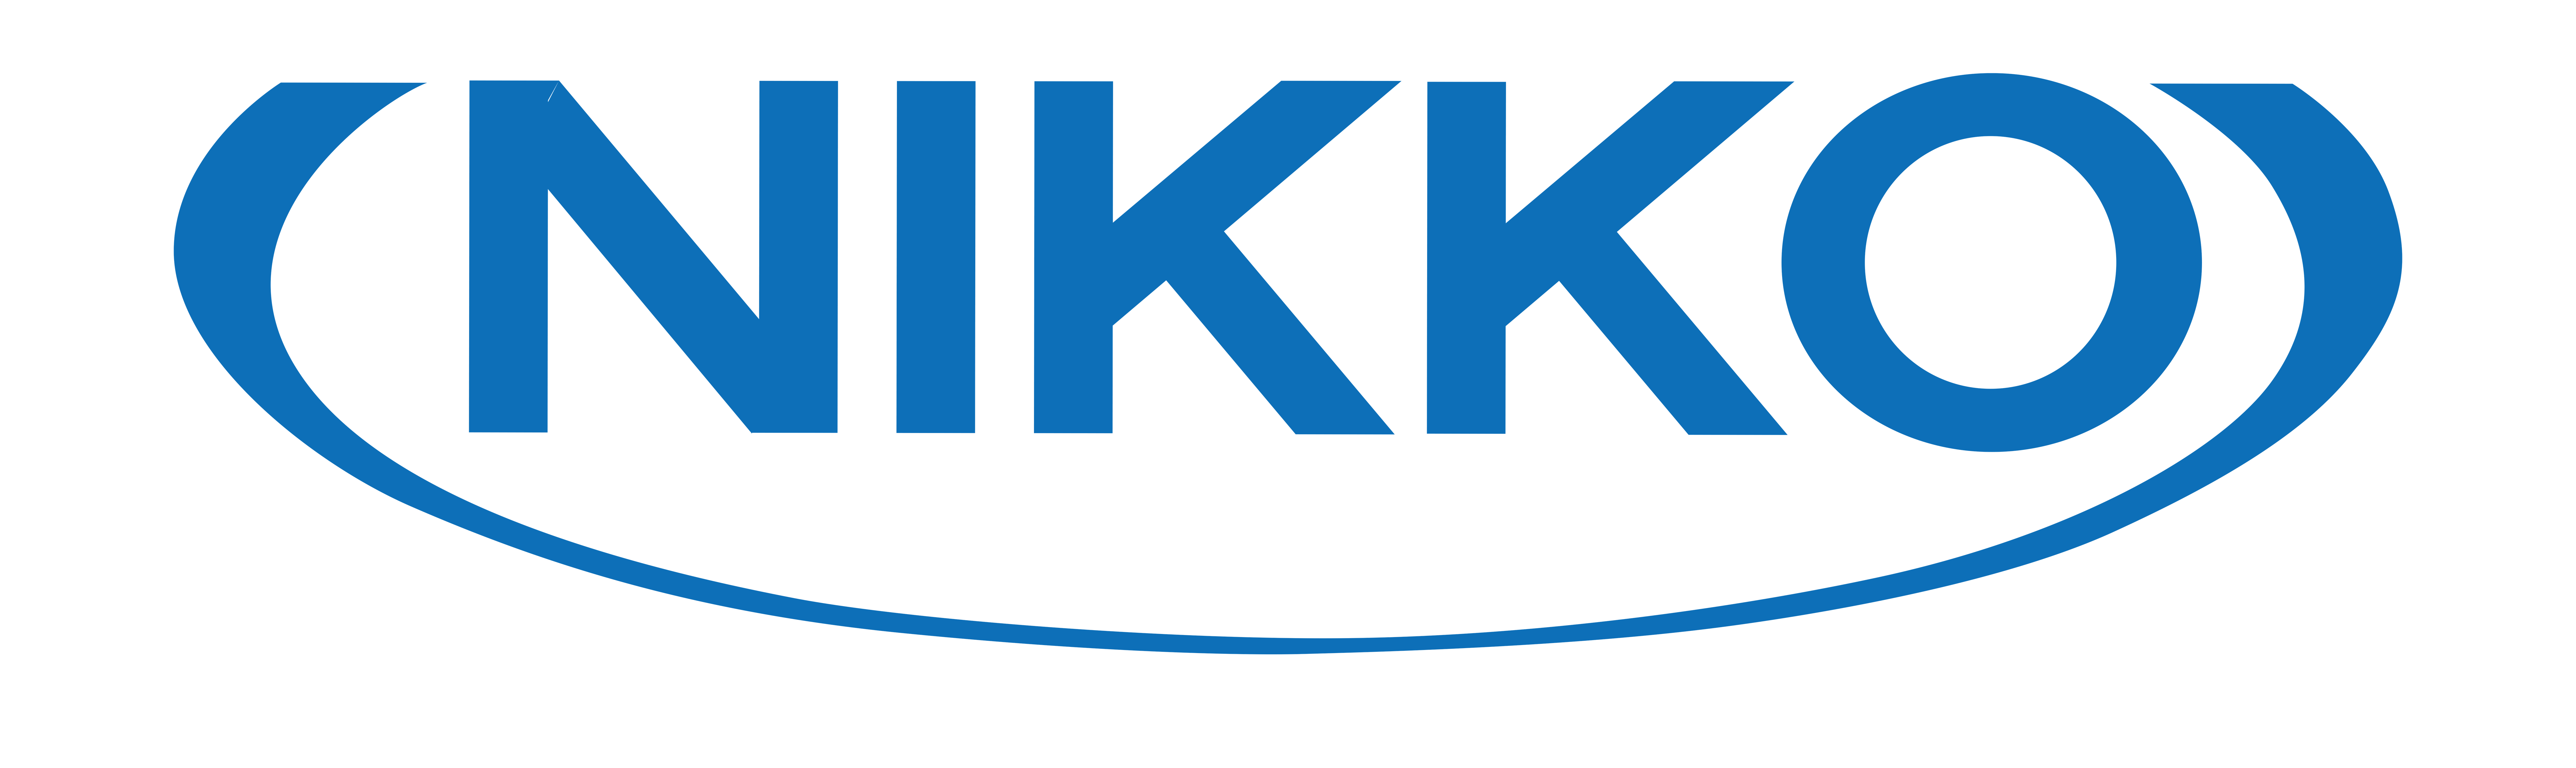 Nikko Co., ltd